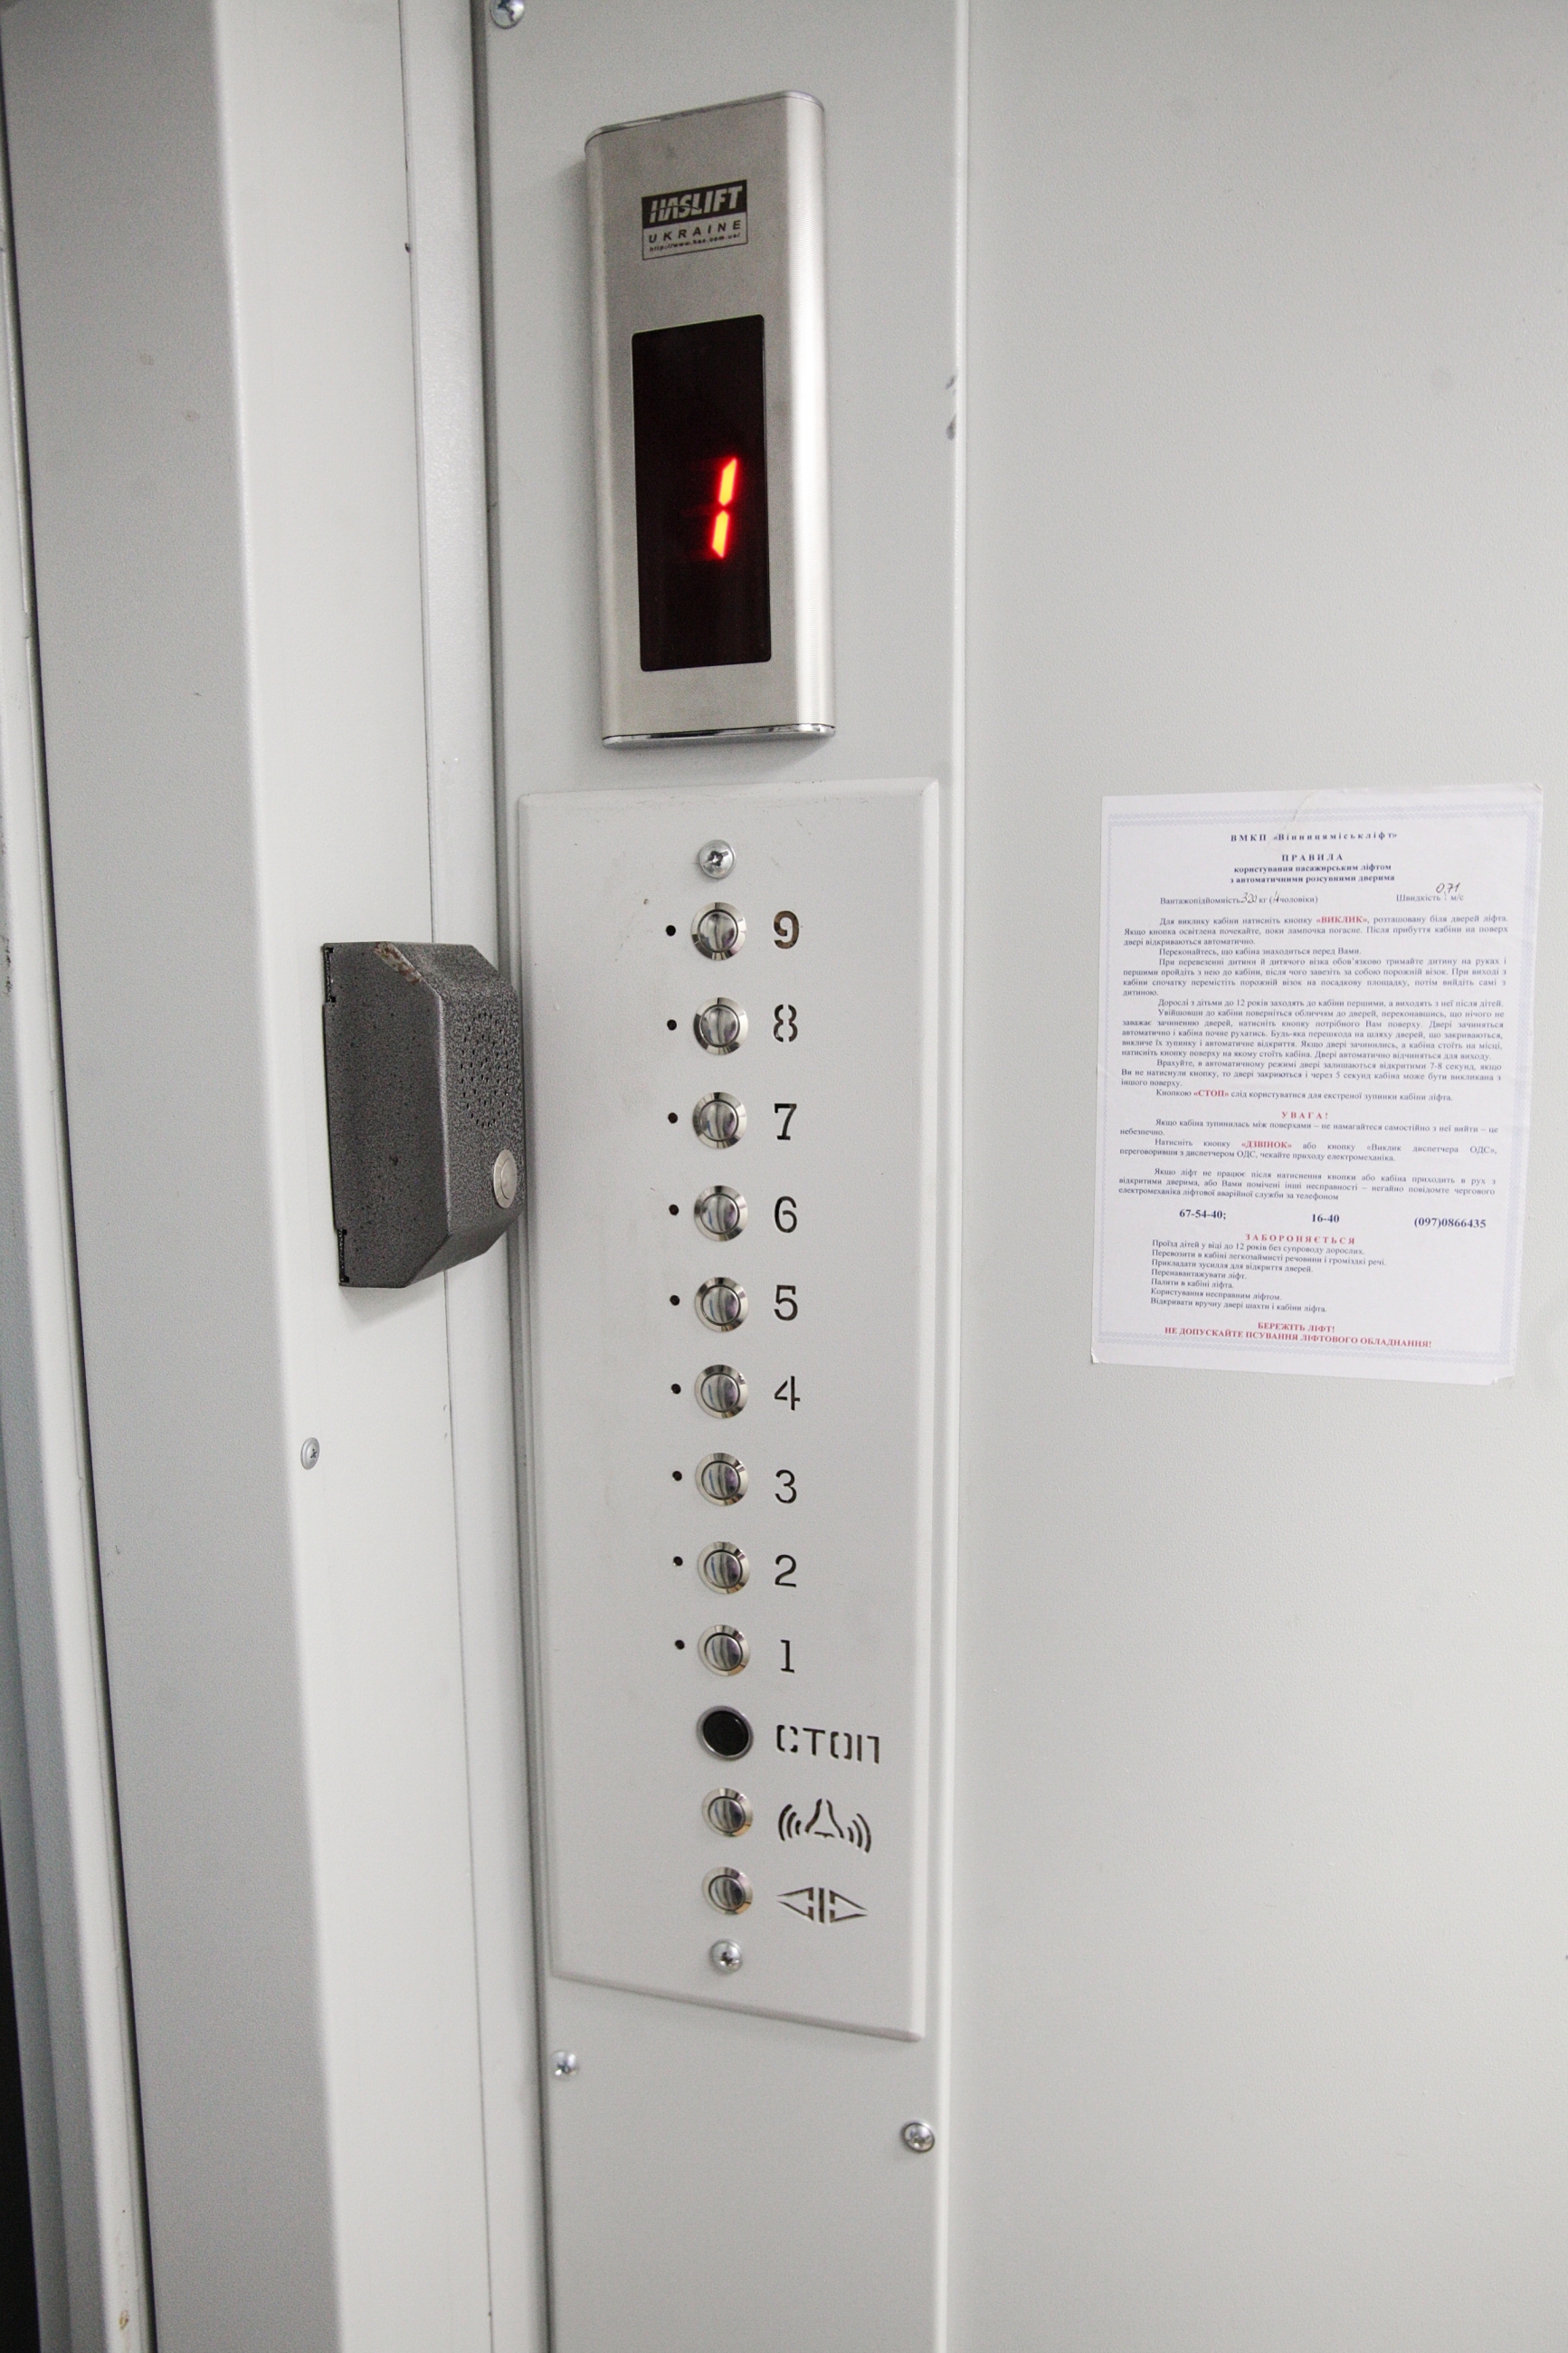 З початку року у Вінниці капітально відремонтували вісім ліфтів